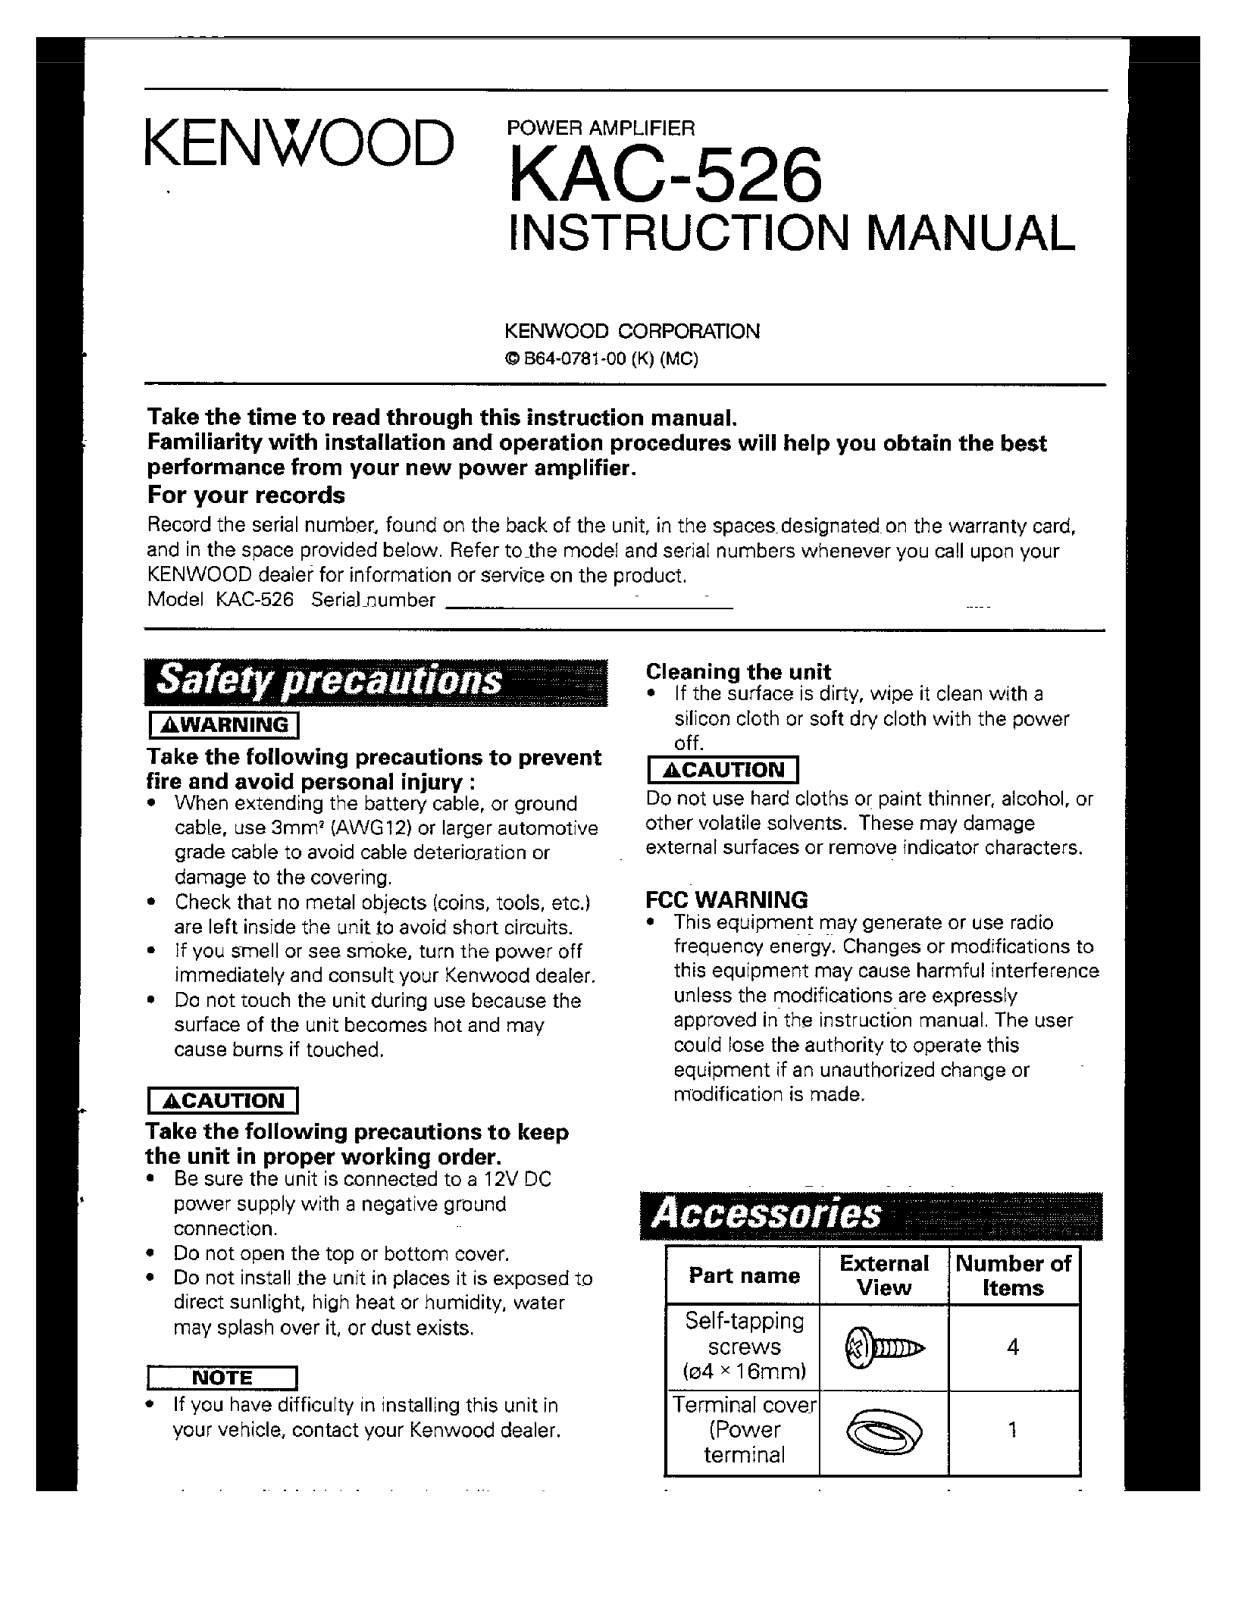 Kenwood KAC-526 User Manual